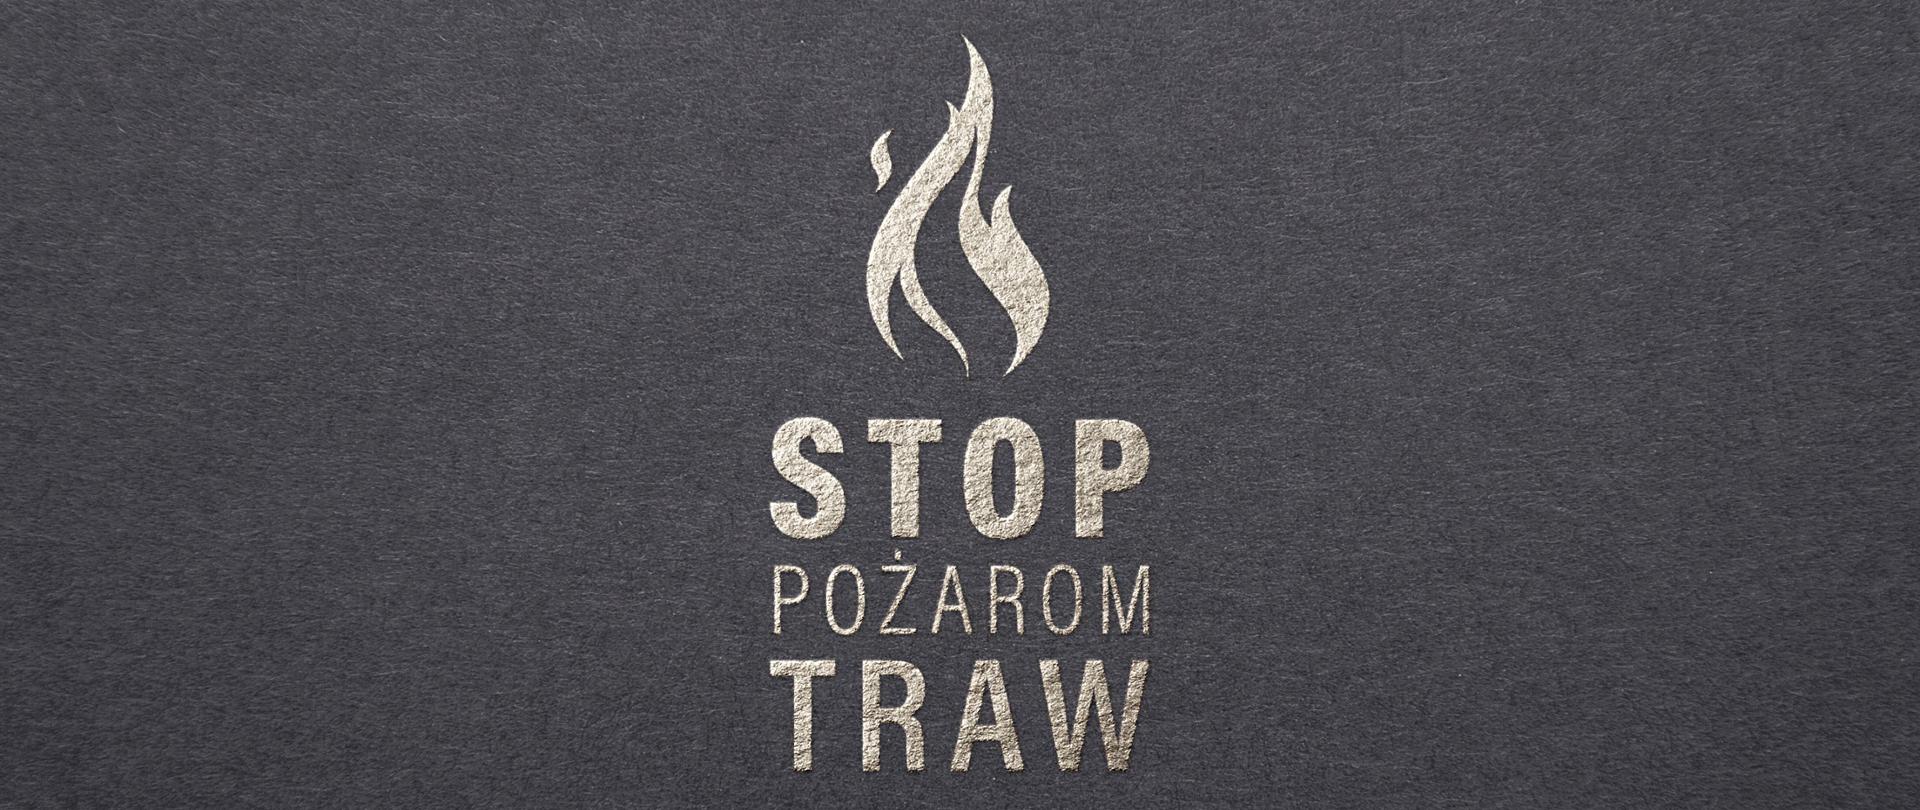 Zdjęcie pokazuje logo ogólnopolskiej kampanii społecznej stop pożarom traw. Na ciemnym tle widać wizerunek ognia, pod którym umieszczono napis stop pożarom traw 